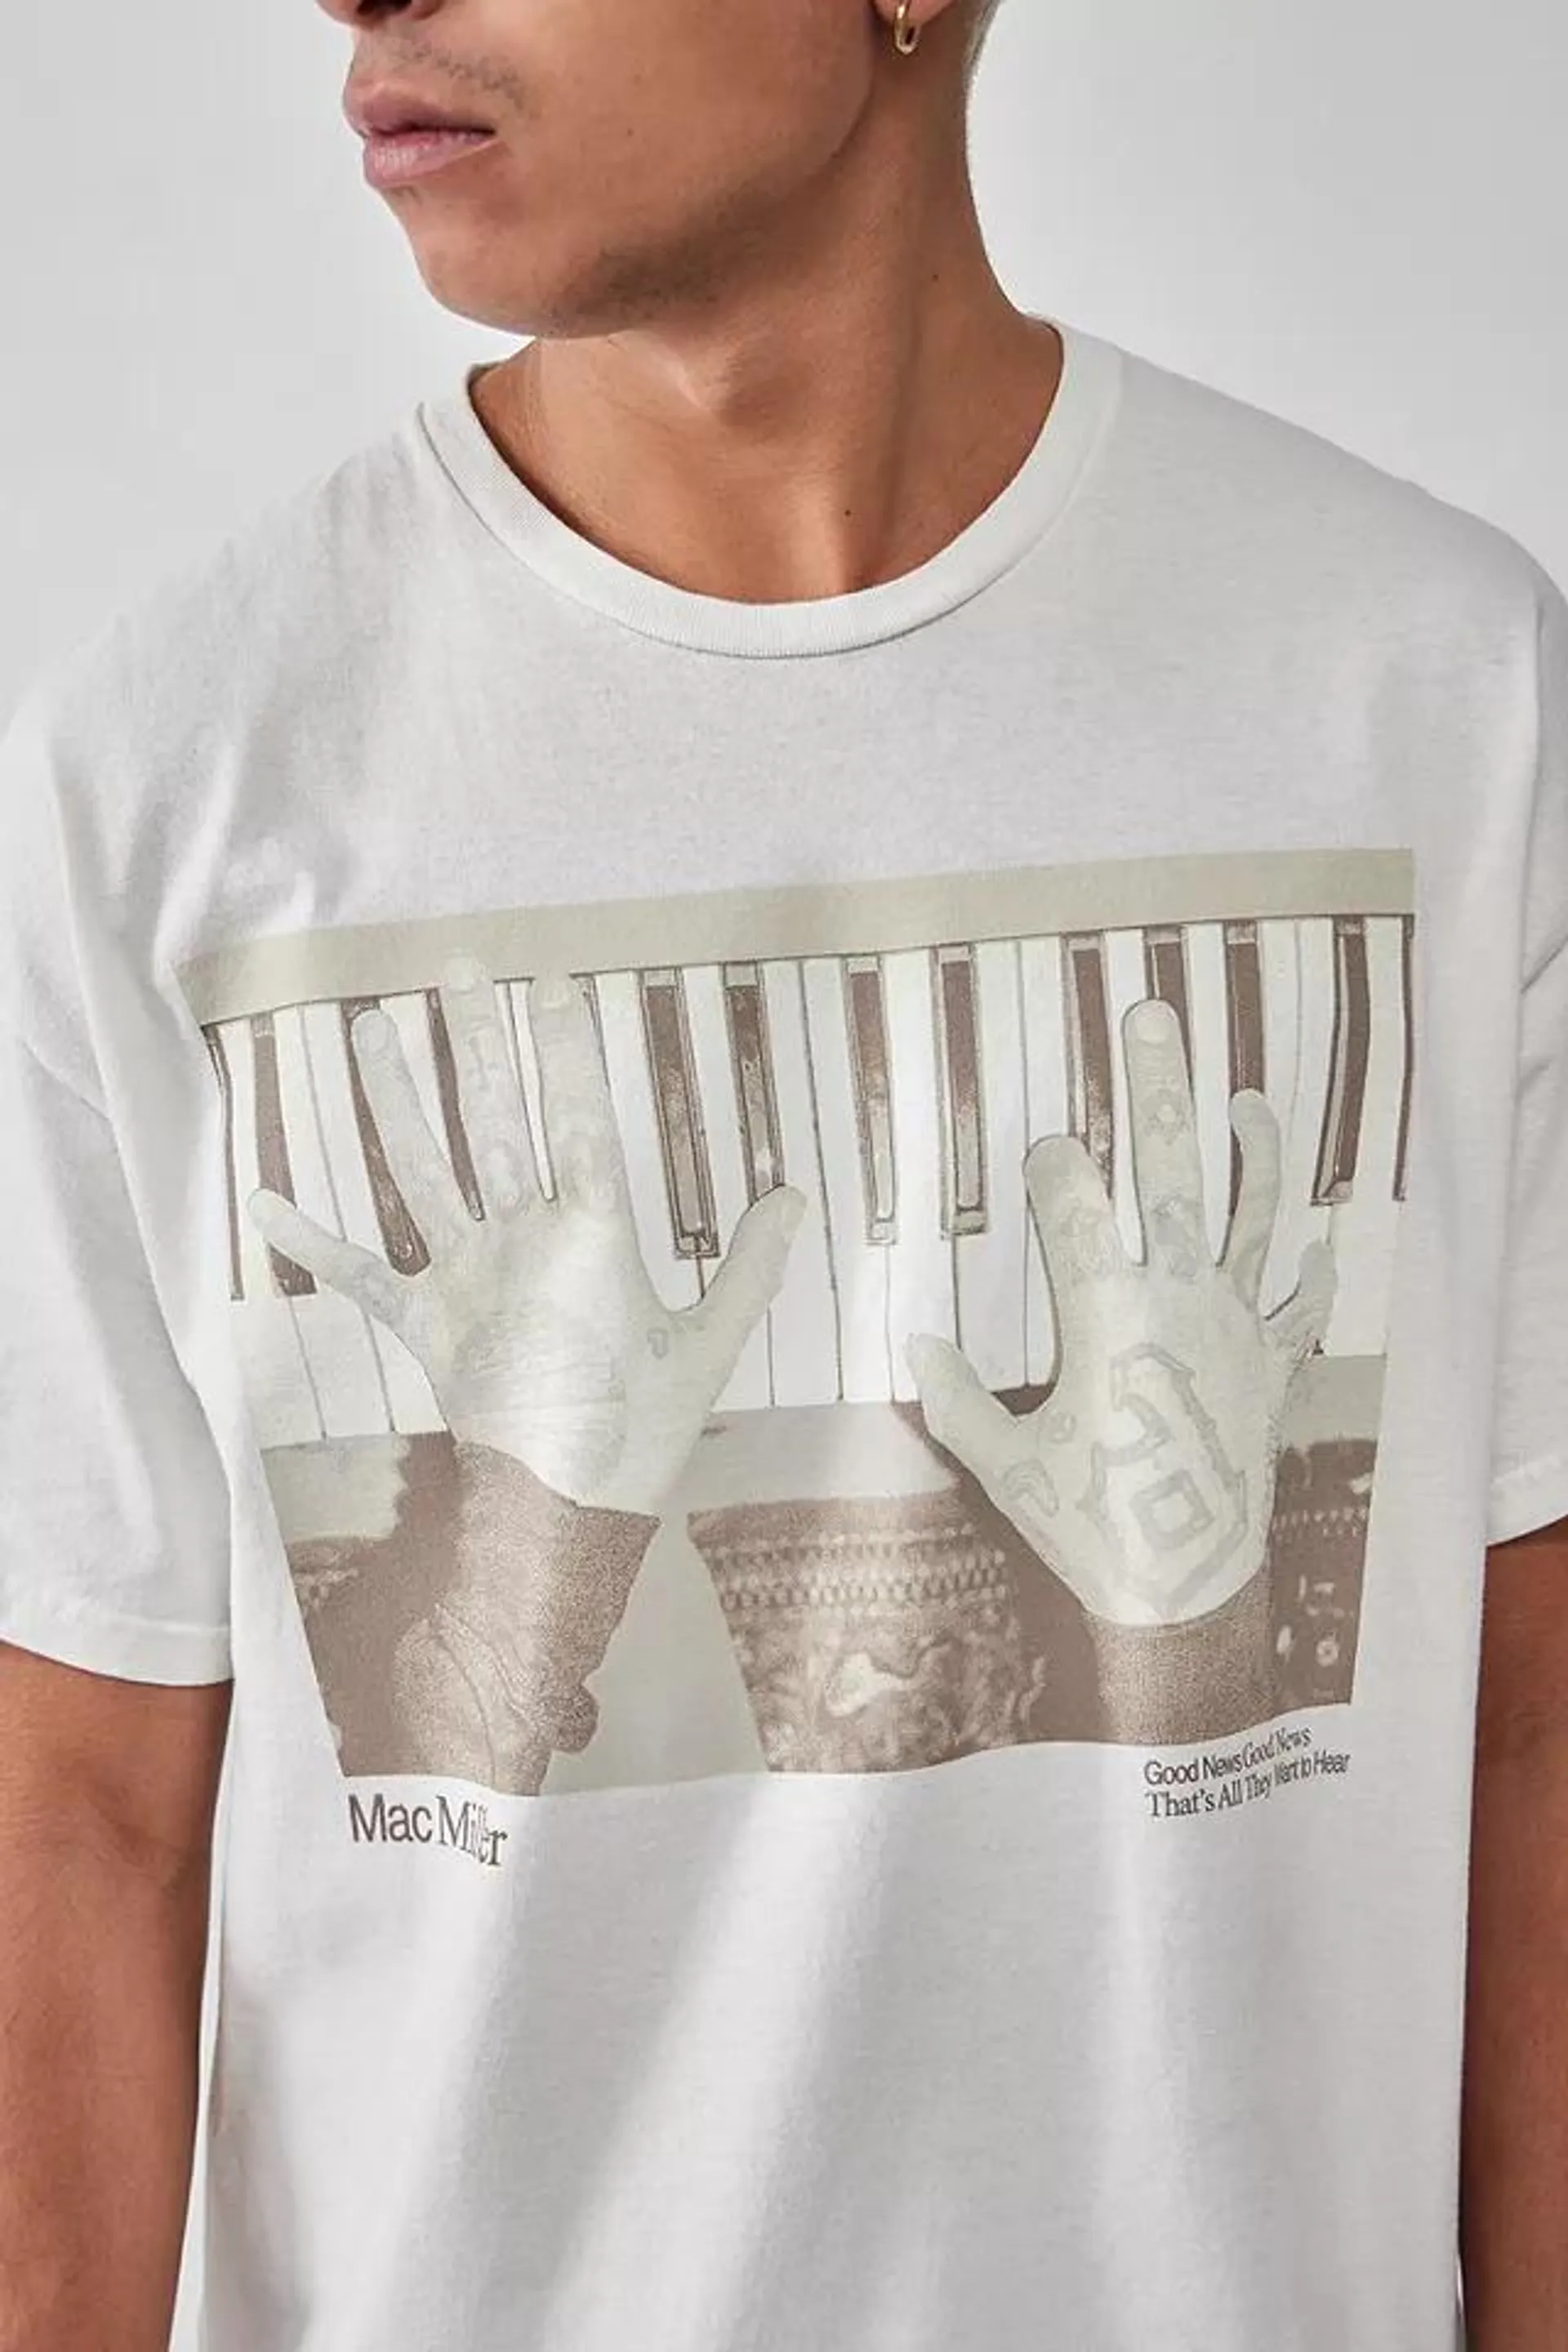 UO - T-shirt avec photo de piano Mac Miller blanc